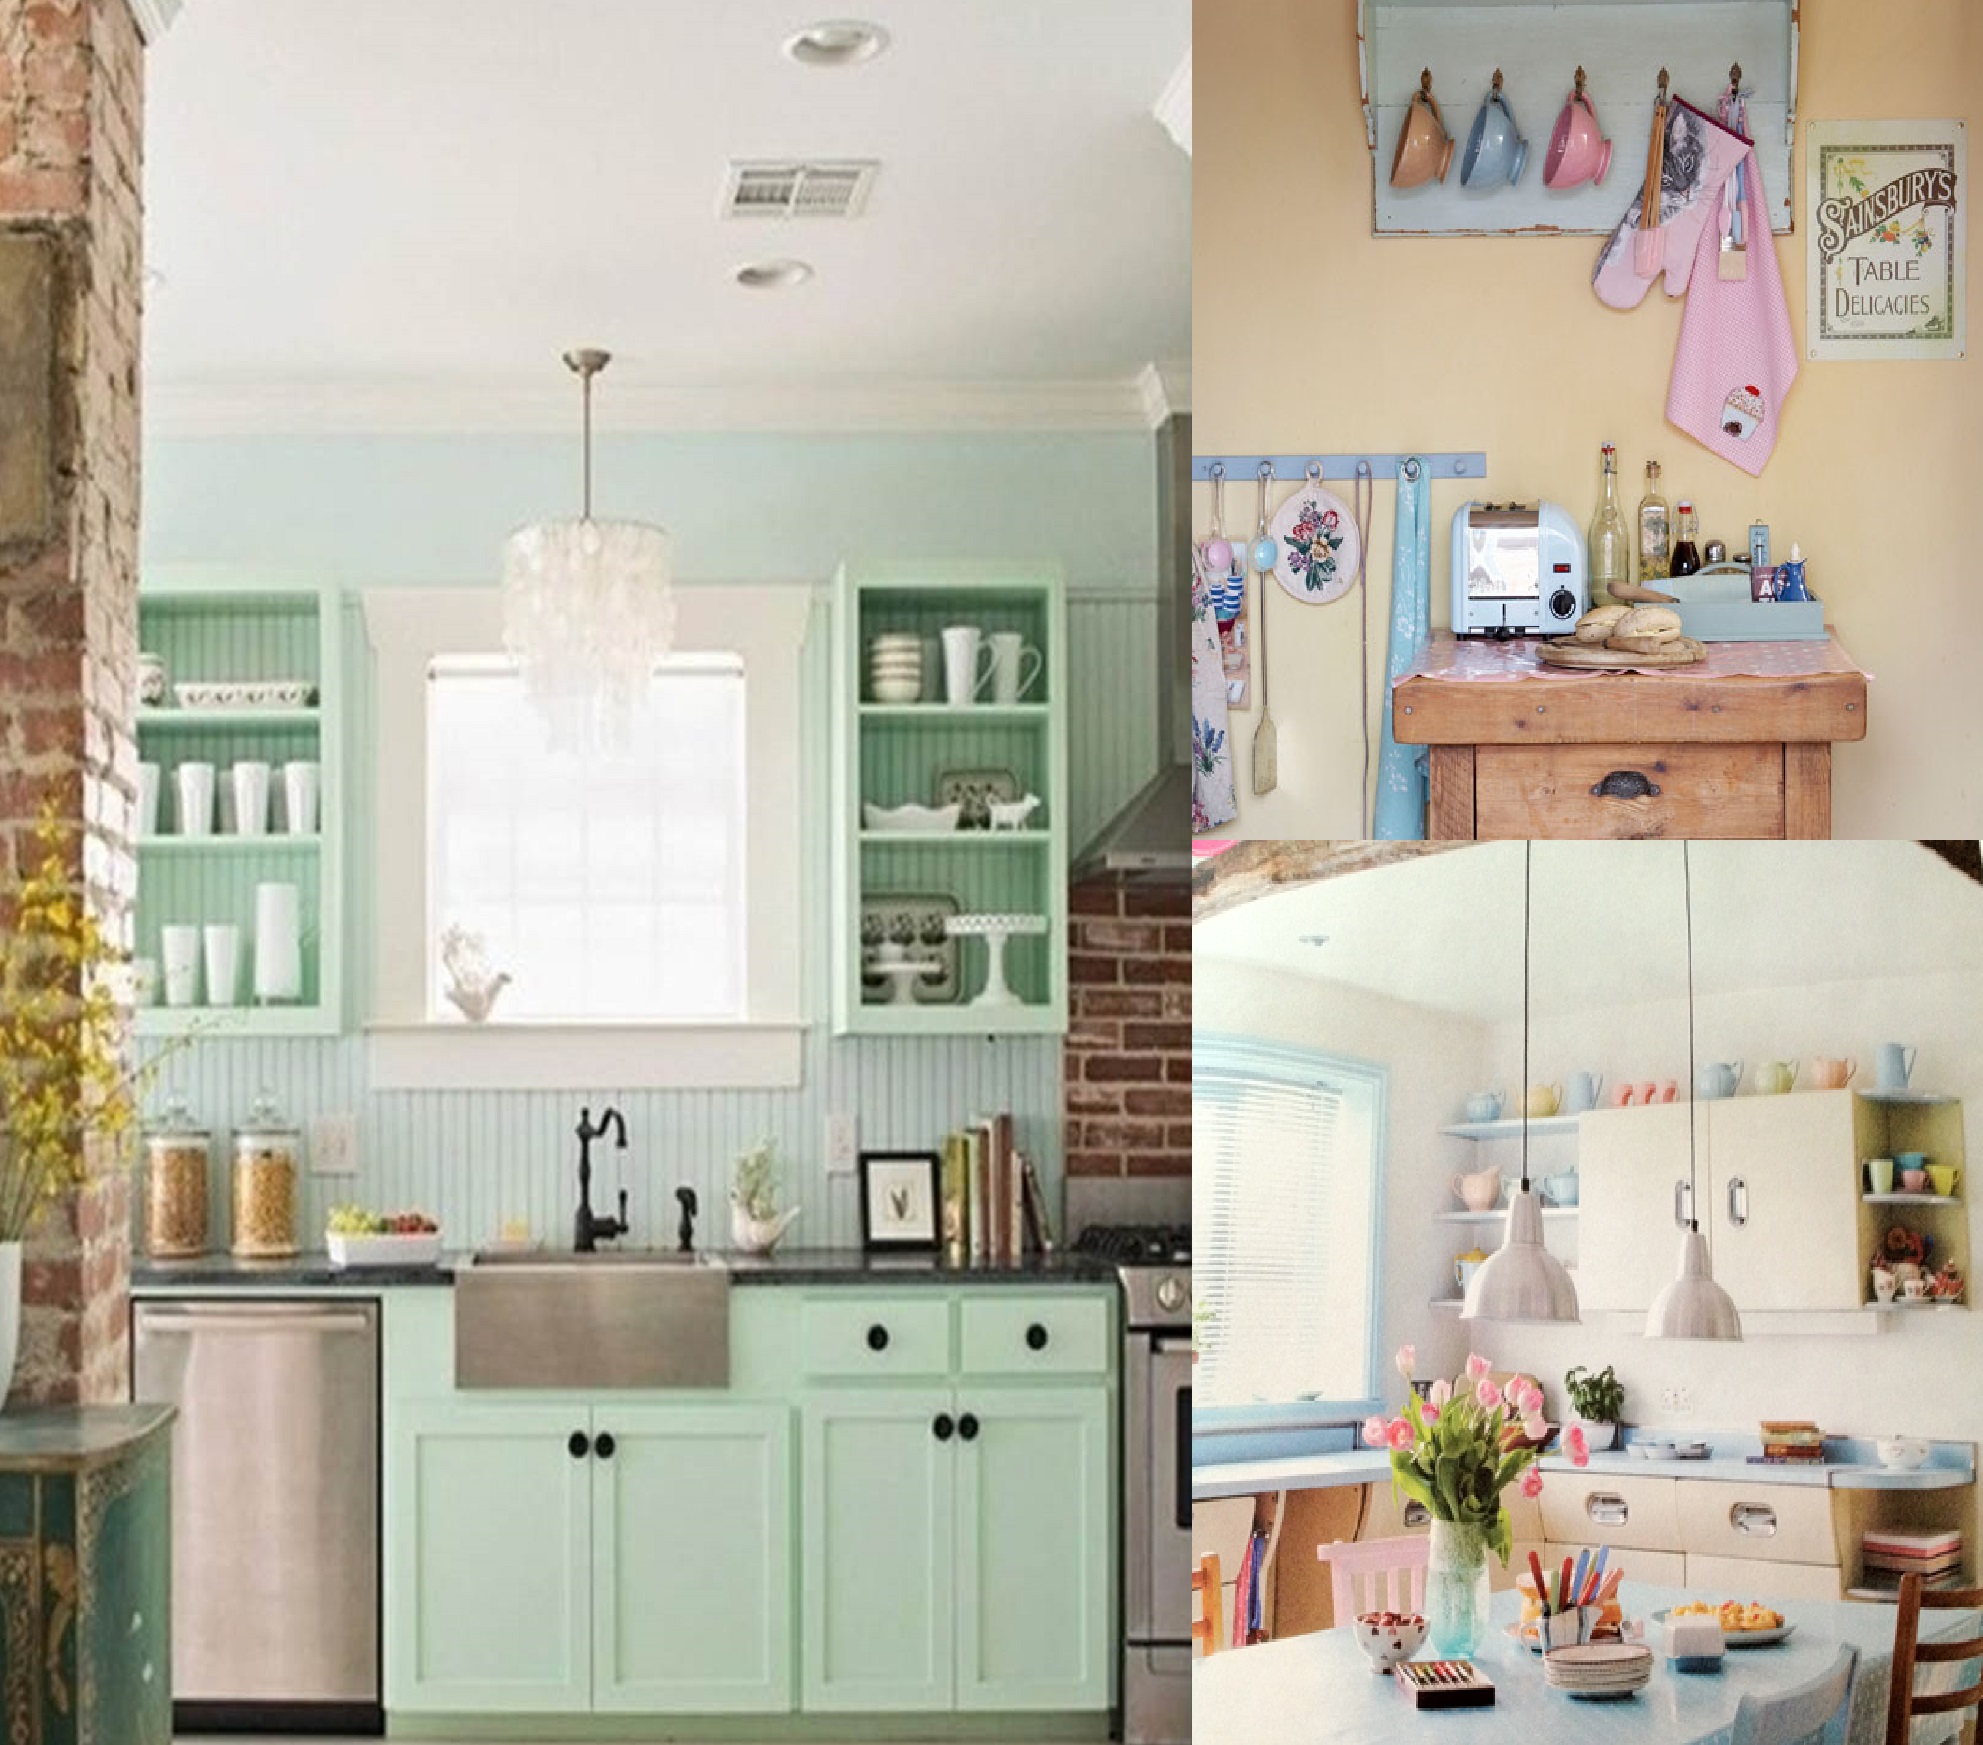 Фотоколлаж: декоративные элементы пастельных тонов в дизайне интерьера кухни